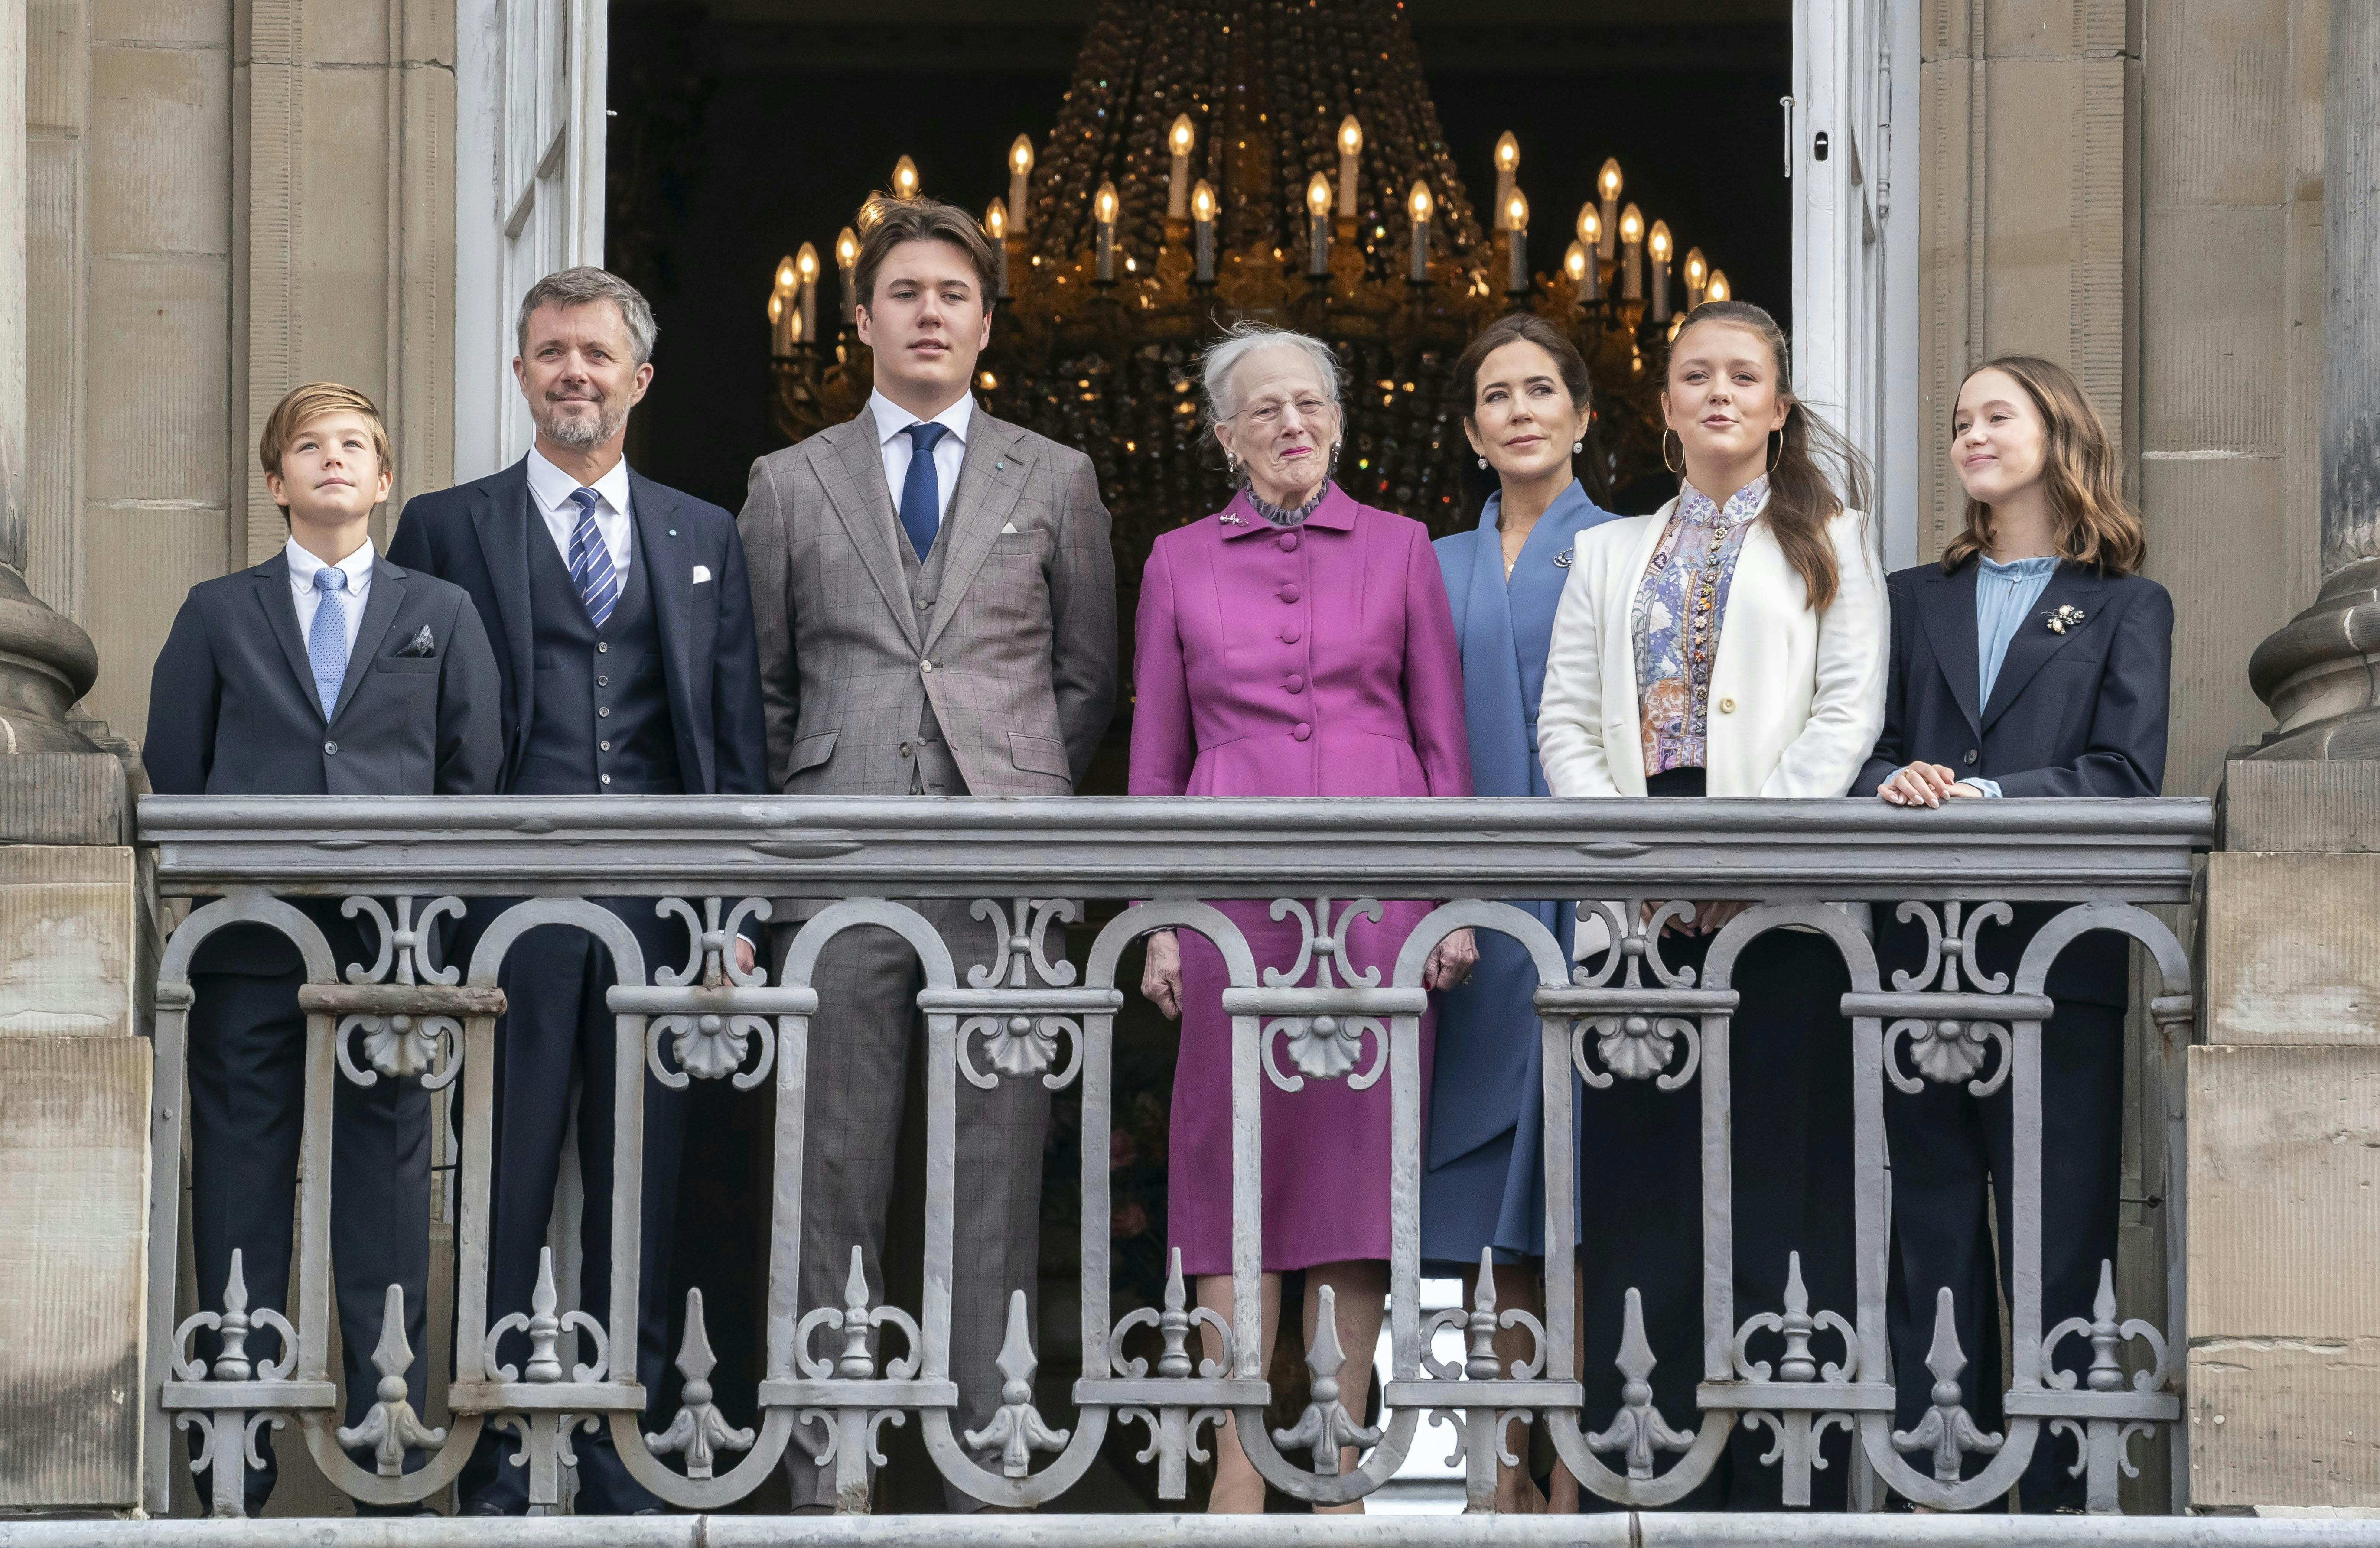 En ny meningsmåling viser, at dronning Margrethe er det mest populære medlem af kongehuset, når befolkningen skal stemme om det.